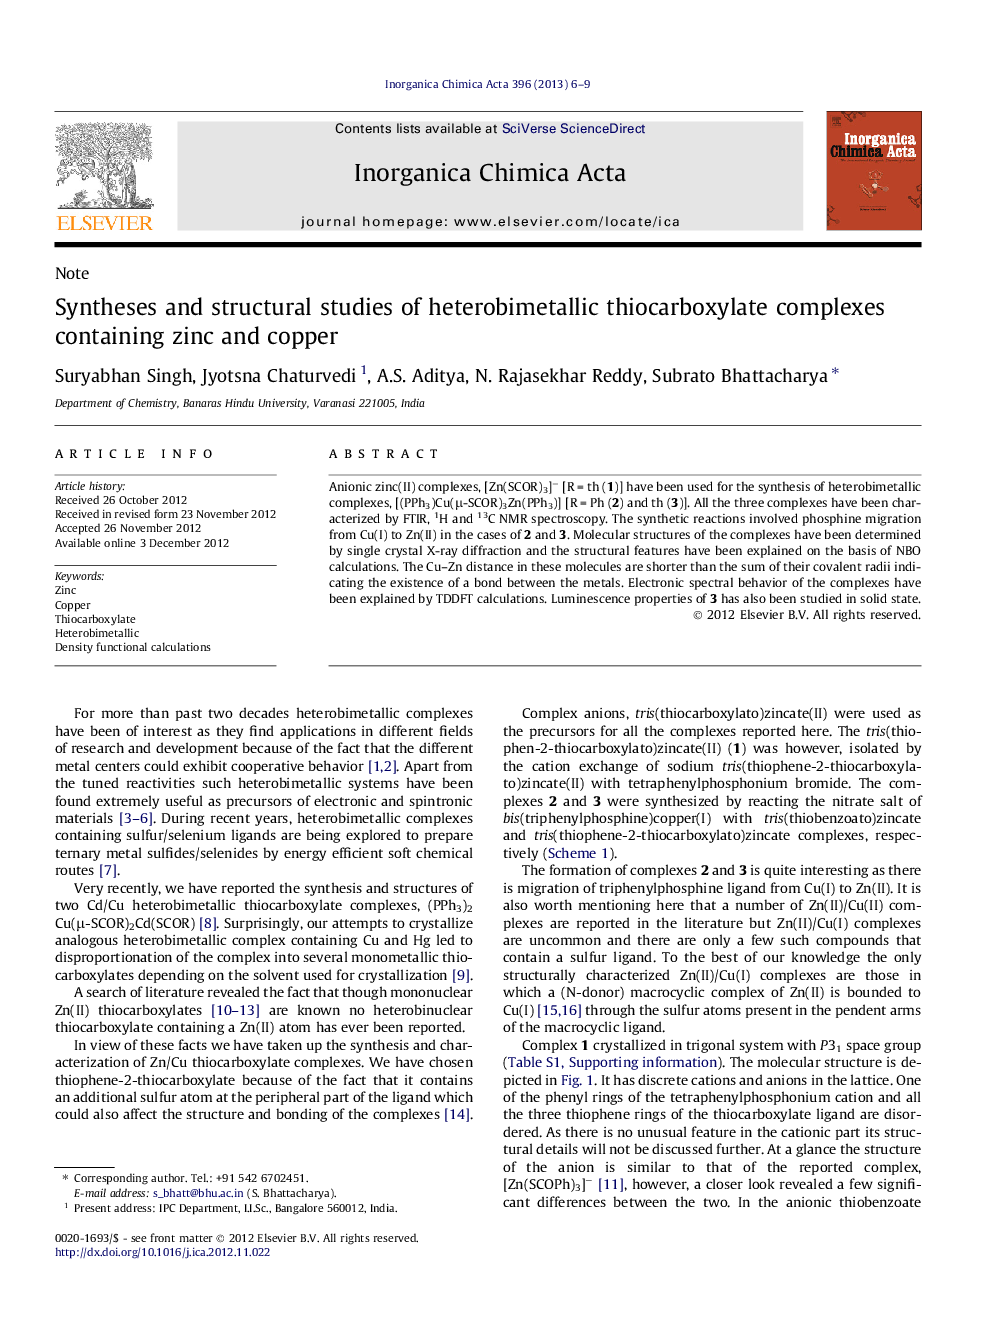 سنتز و مطالعات ساختاری از مجتمع های تیتروبوکسیلات هترو بیومتریک حاوی روی و مس 